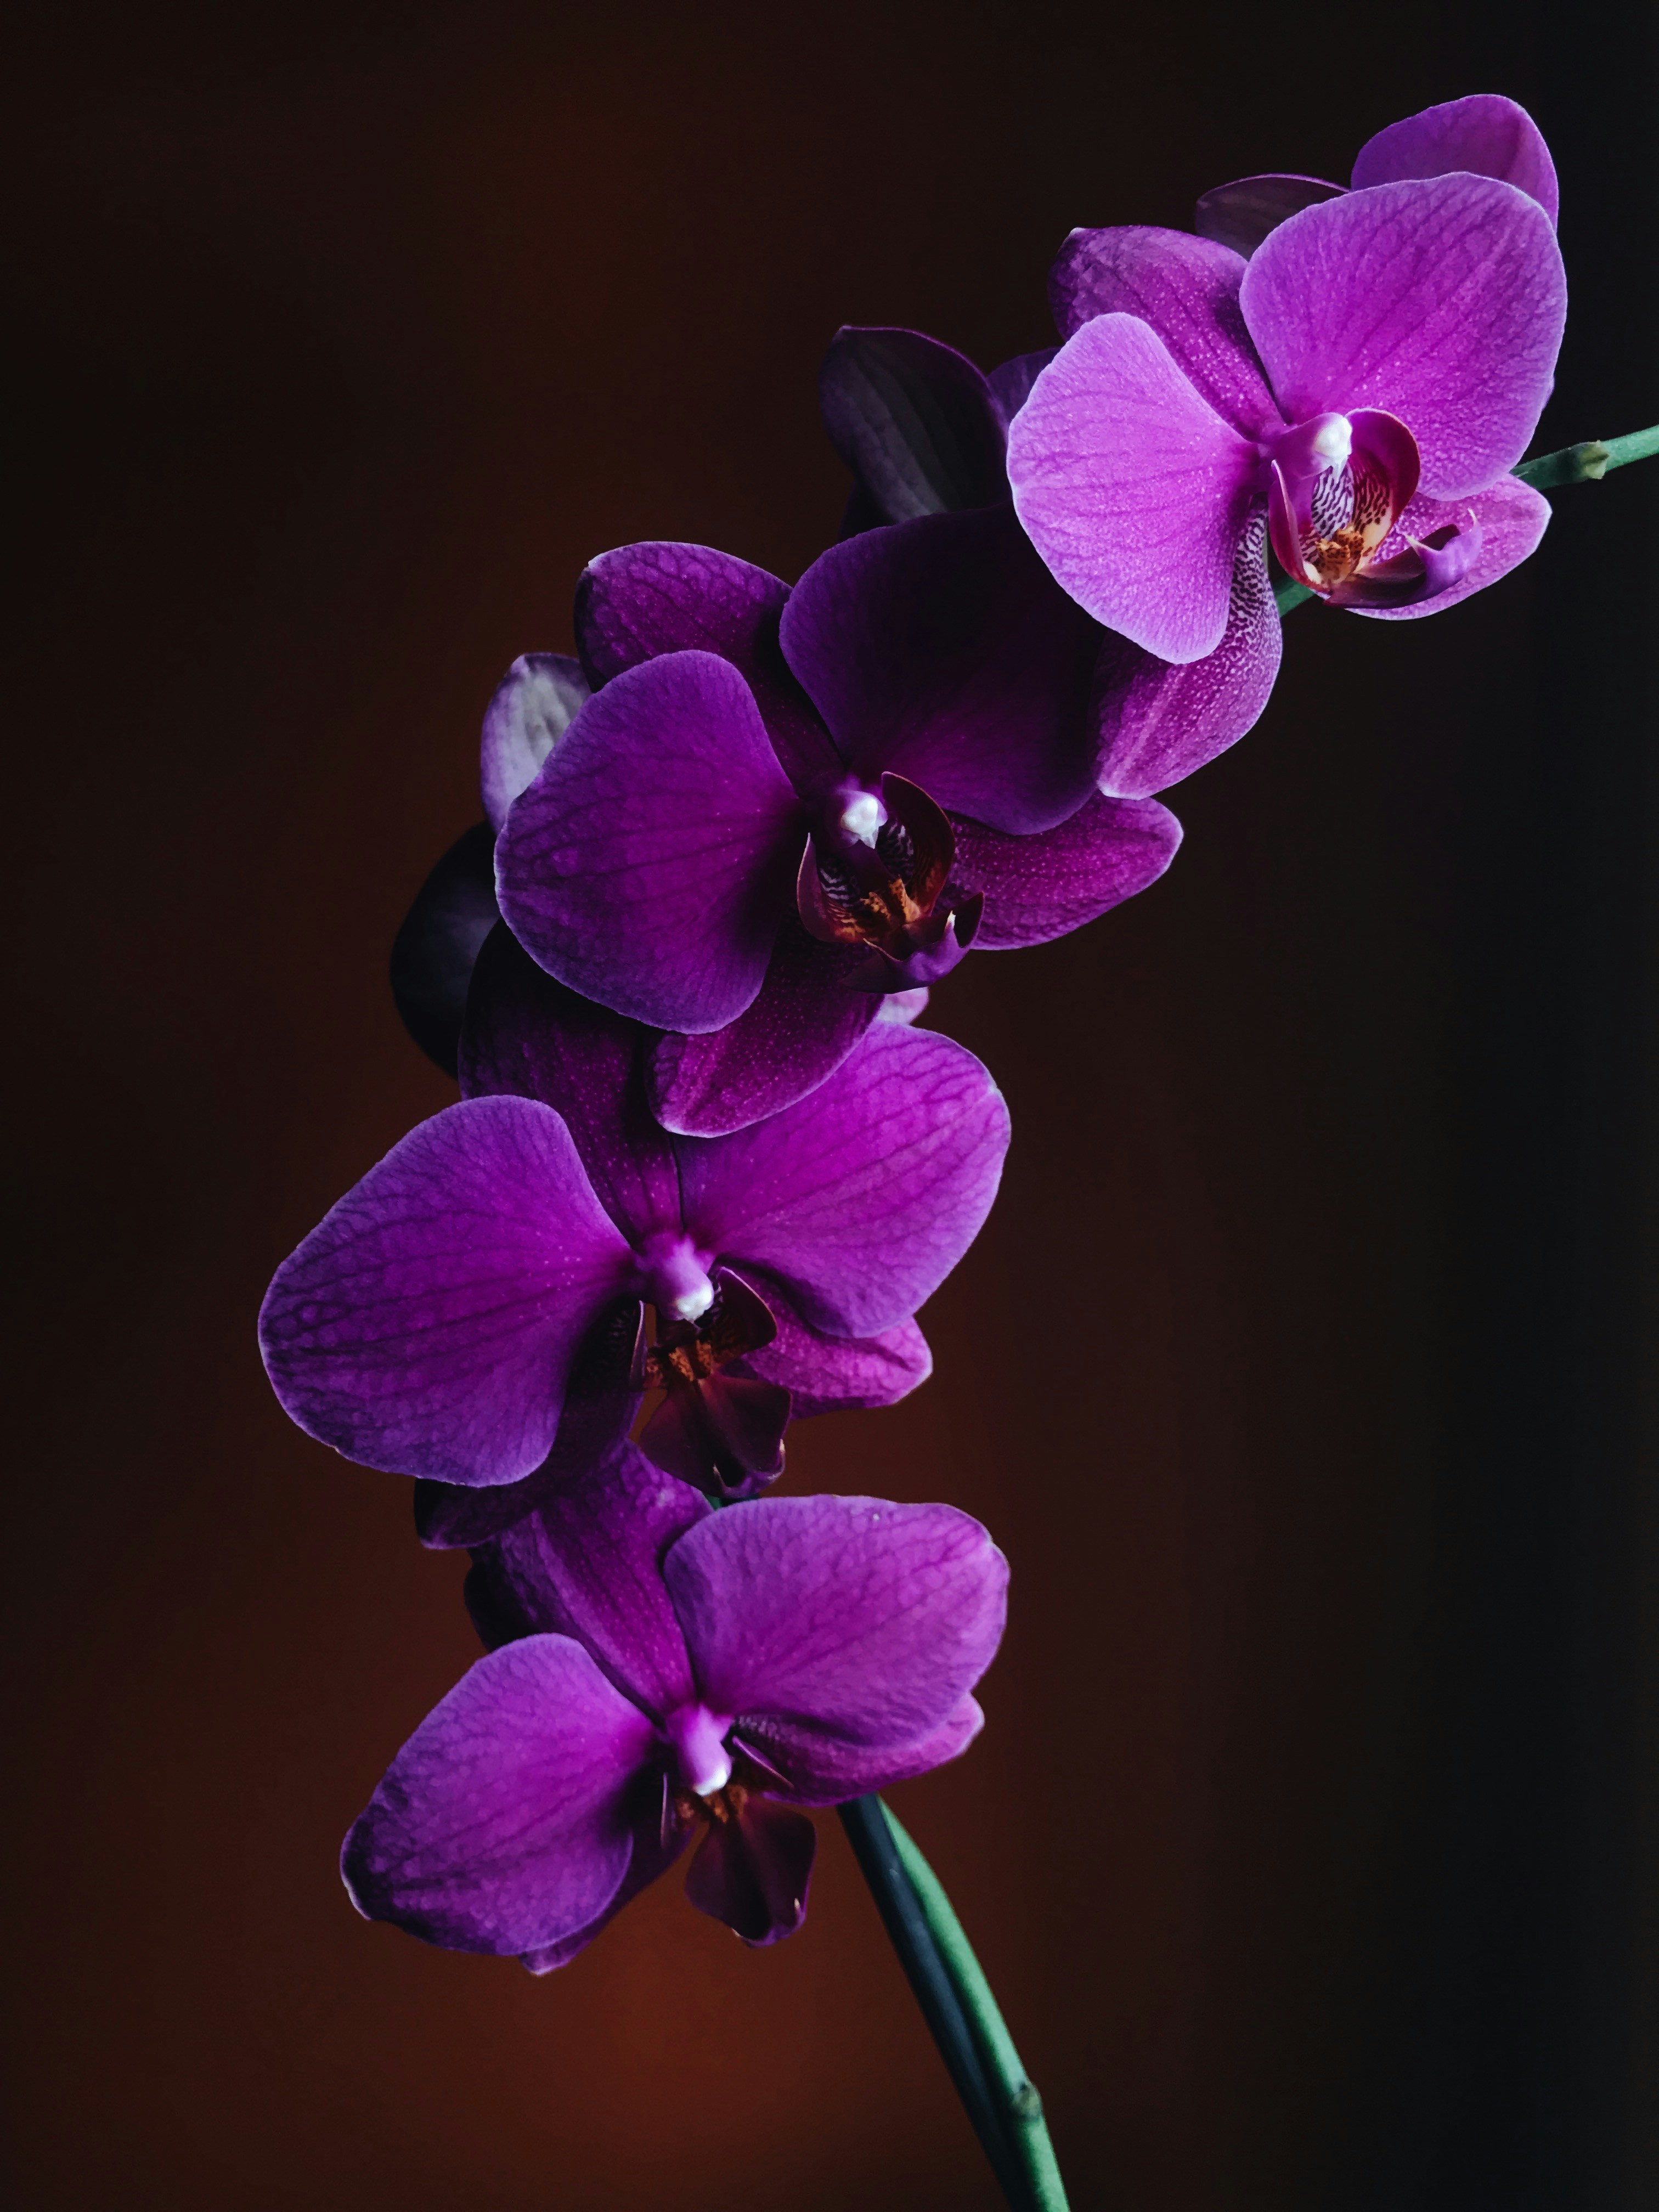 Palestra Técnica: Conservação e Germinação de sementes de orquídeas - ferramentas para conservação e propagação de espécies